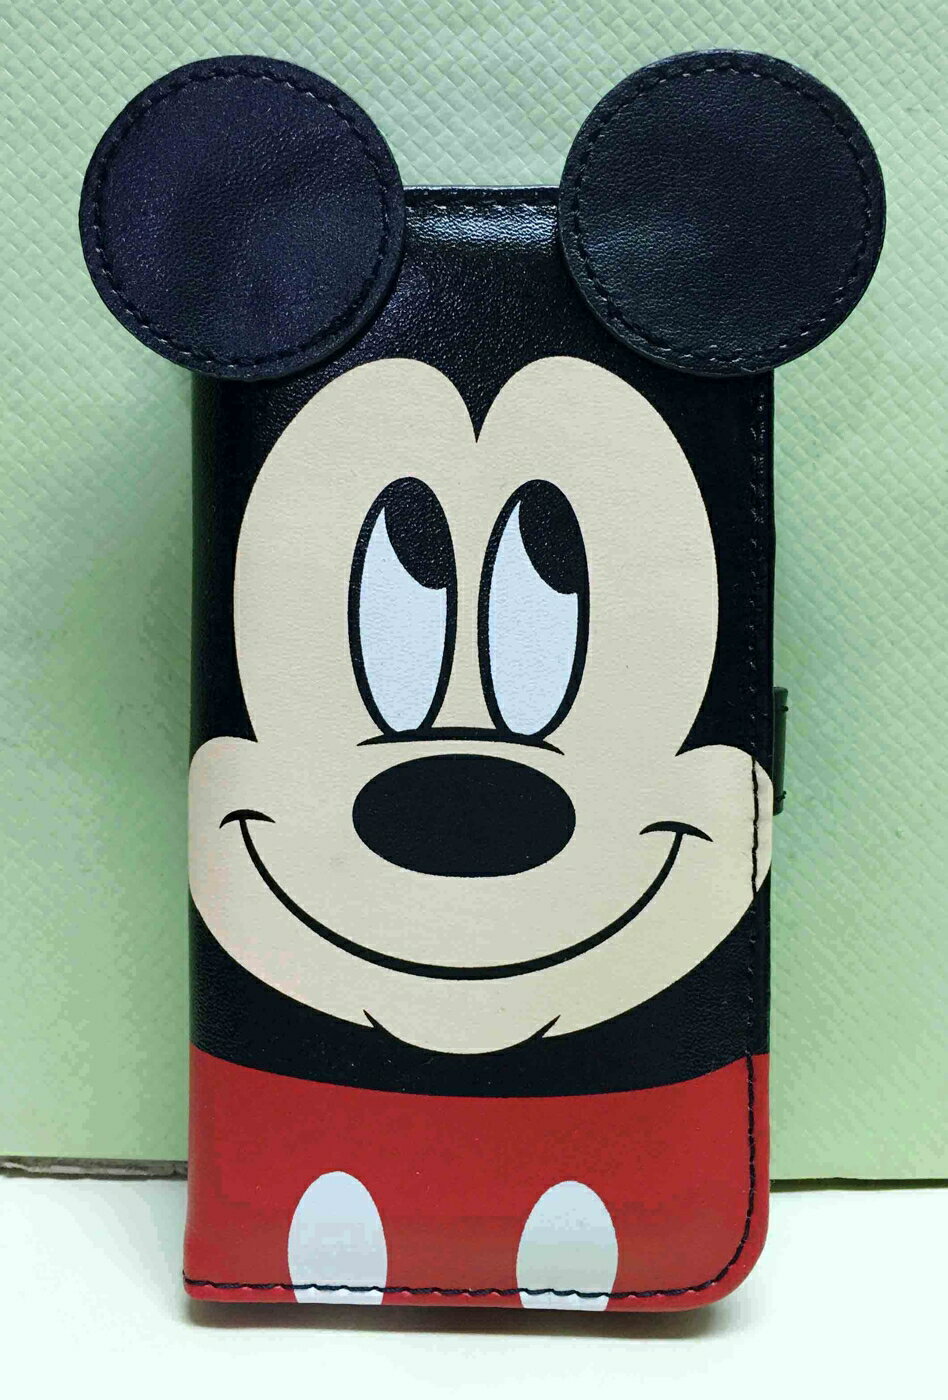 【震撼精品百貨】米奇/米妮 Micky Mouse IPHONE 6掀蓋式皮套-米奇臉 震撼日式精品百貨